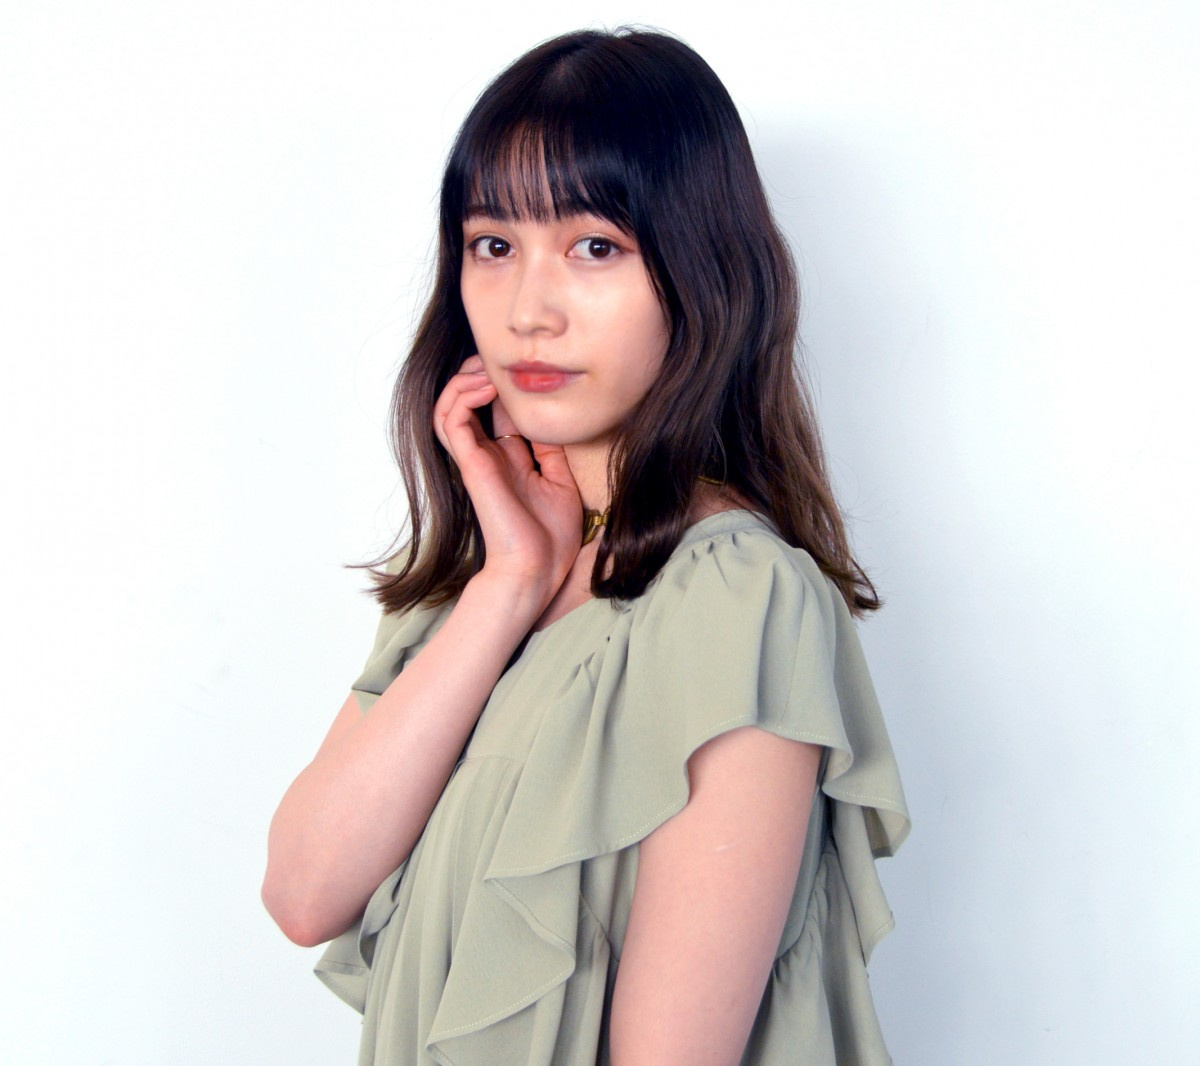 中村ゆりか カワコワ な悪女役に充実感 新しい一面を出せた Oricon News